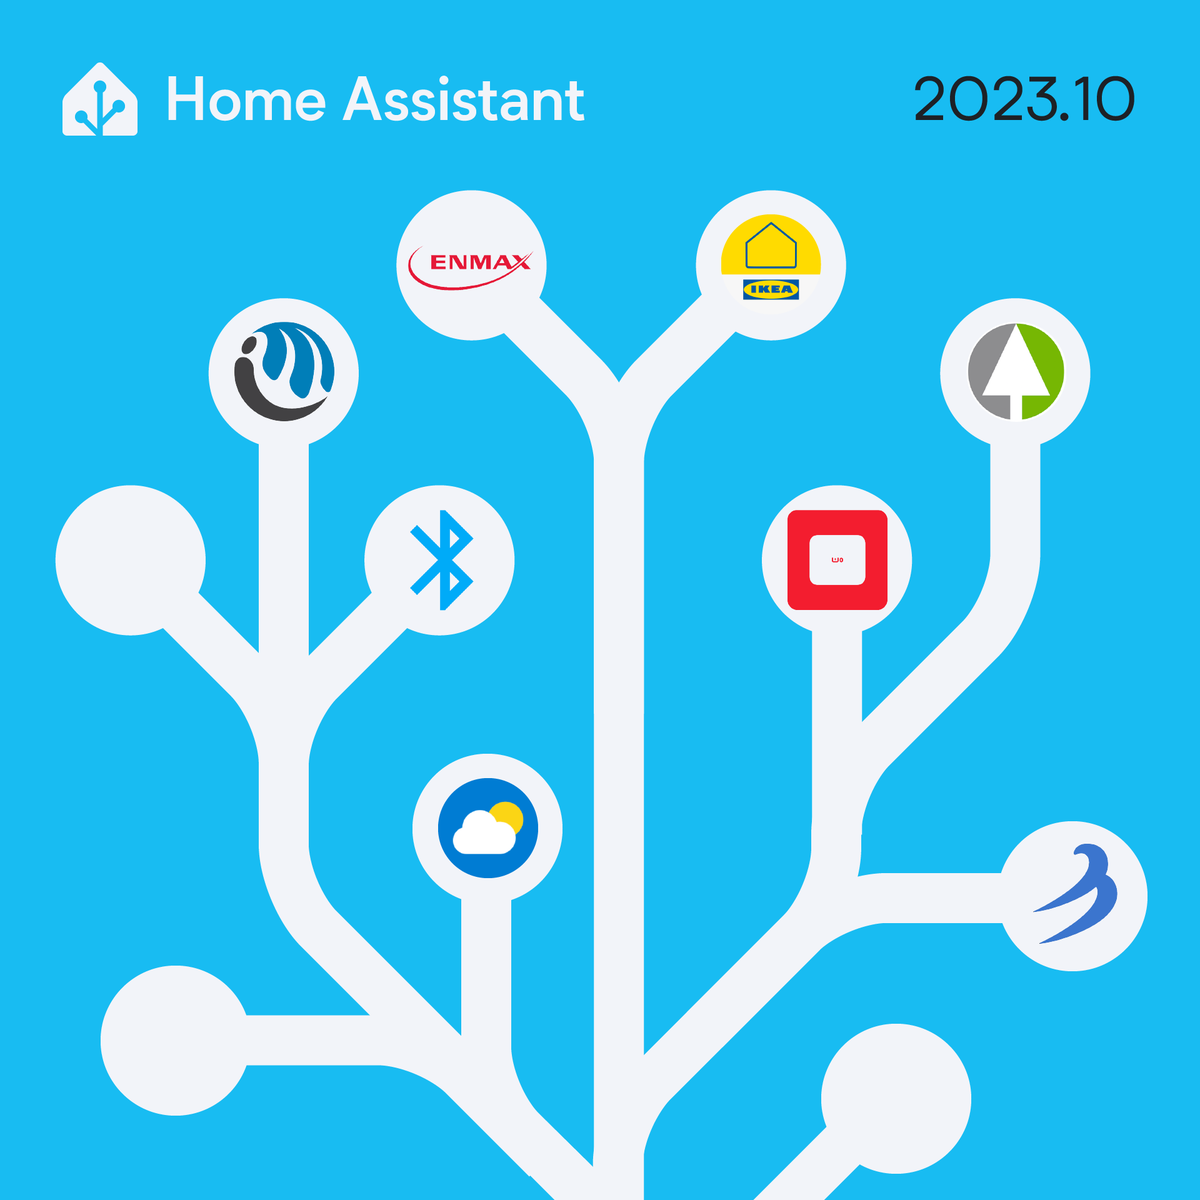 Home Assistant: Neues Logo und Home Assistant Green zum 10. Geburtstag